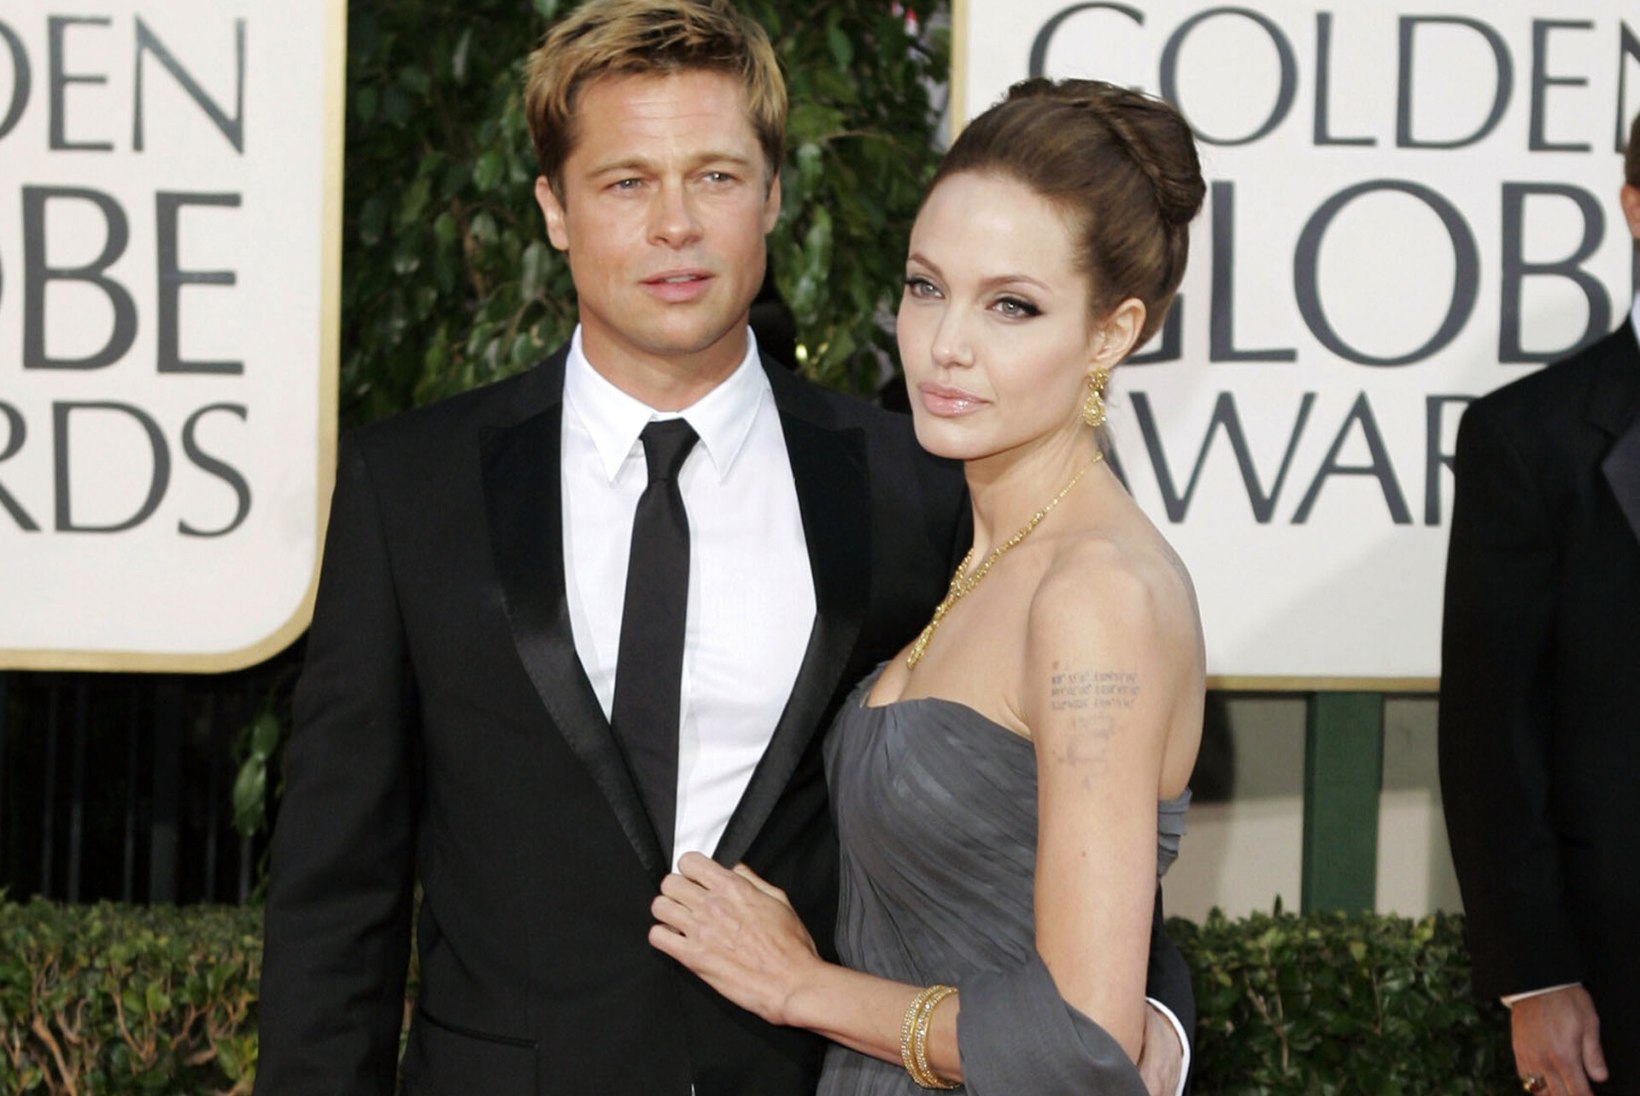 EKSKAASAD RAKSUS: Brad Pitt kaebas Angelina Jolie kohtusse